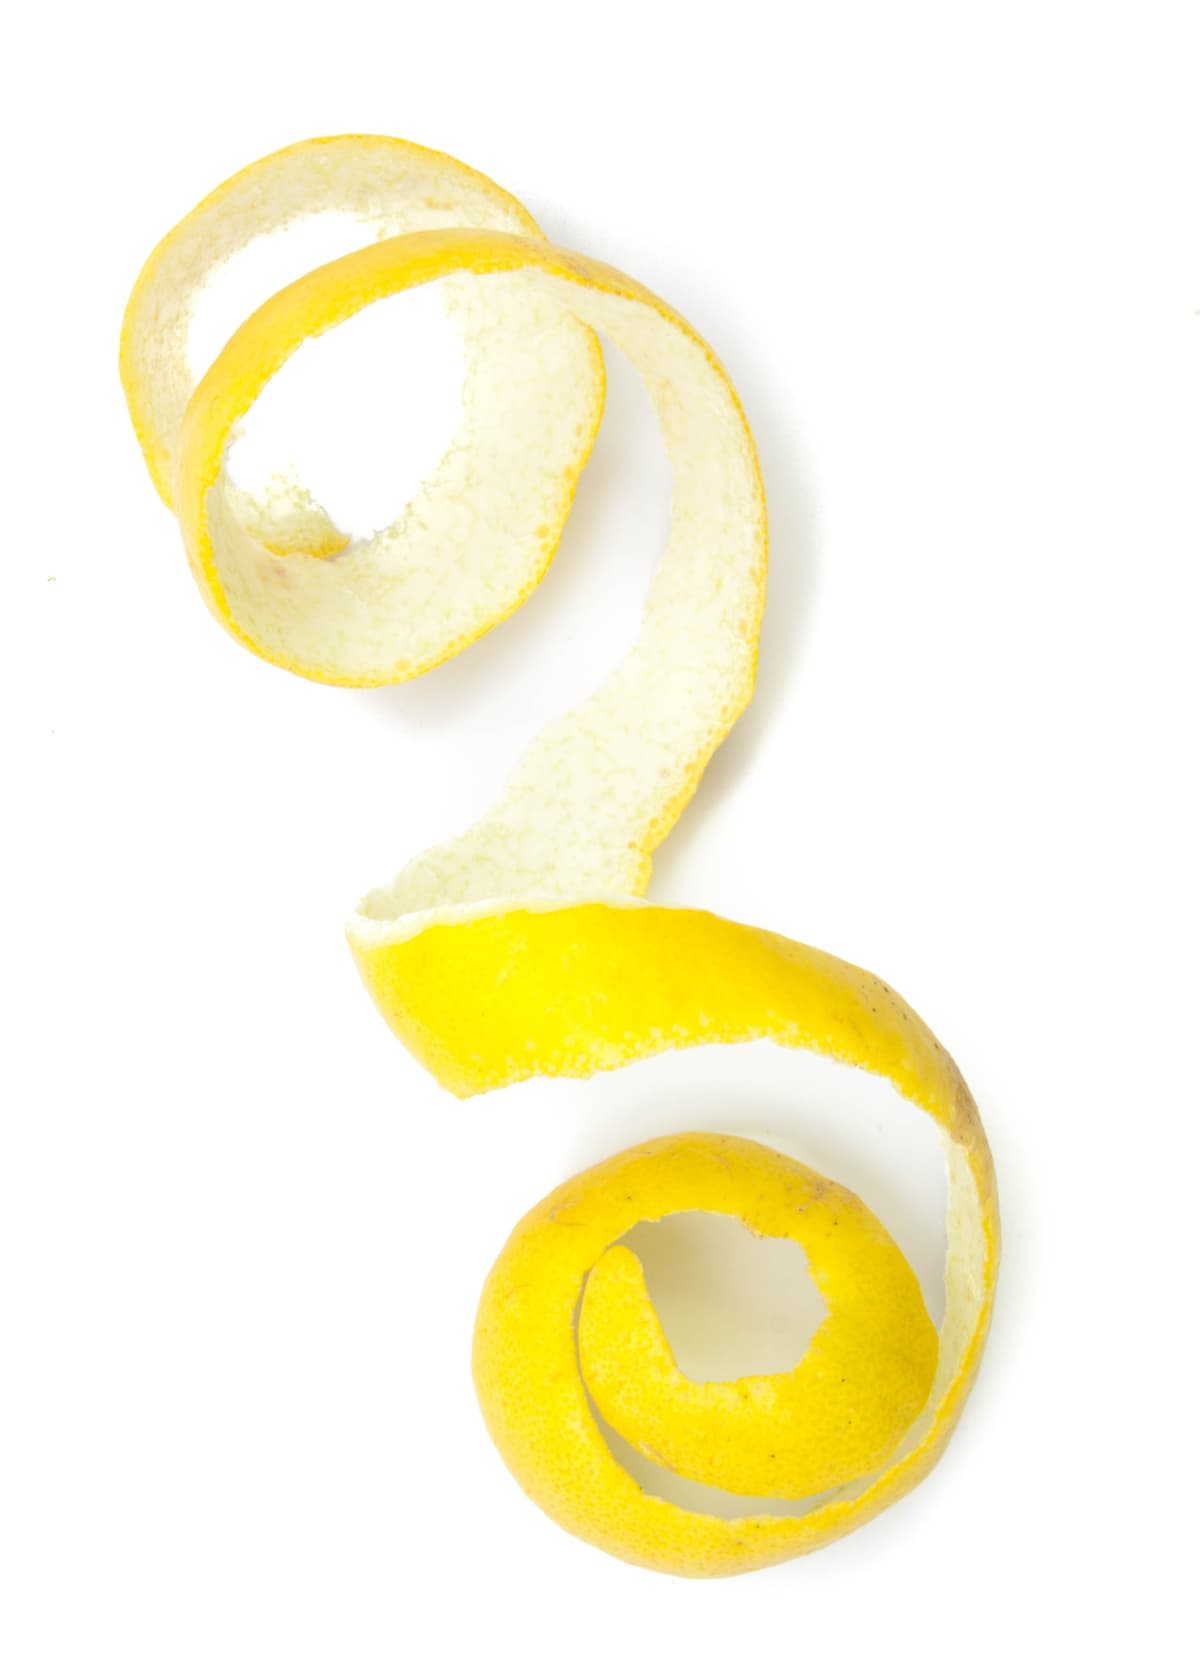 Peeled lemon zest on a white background